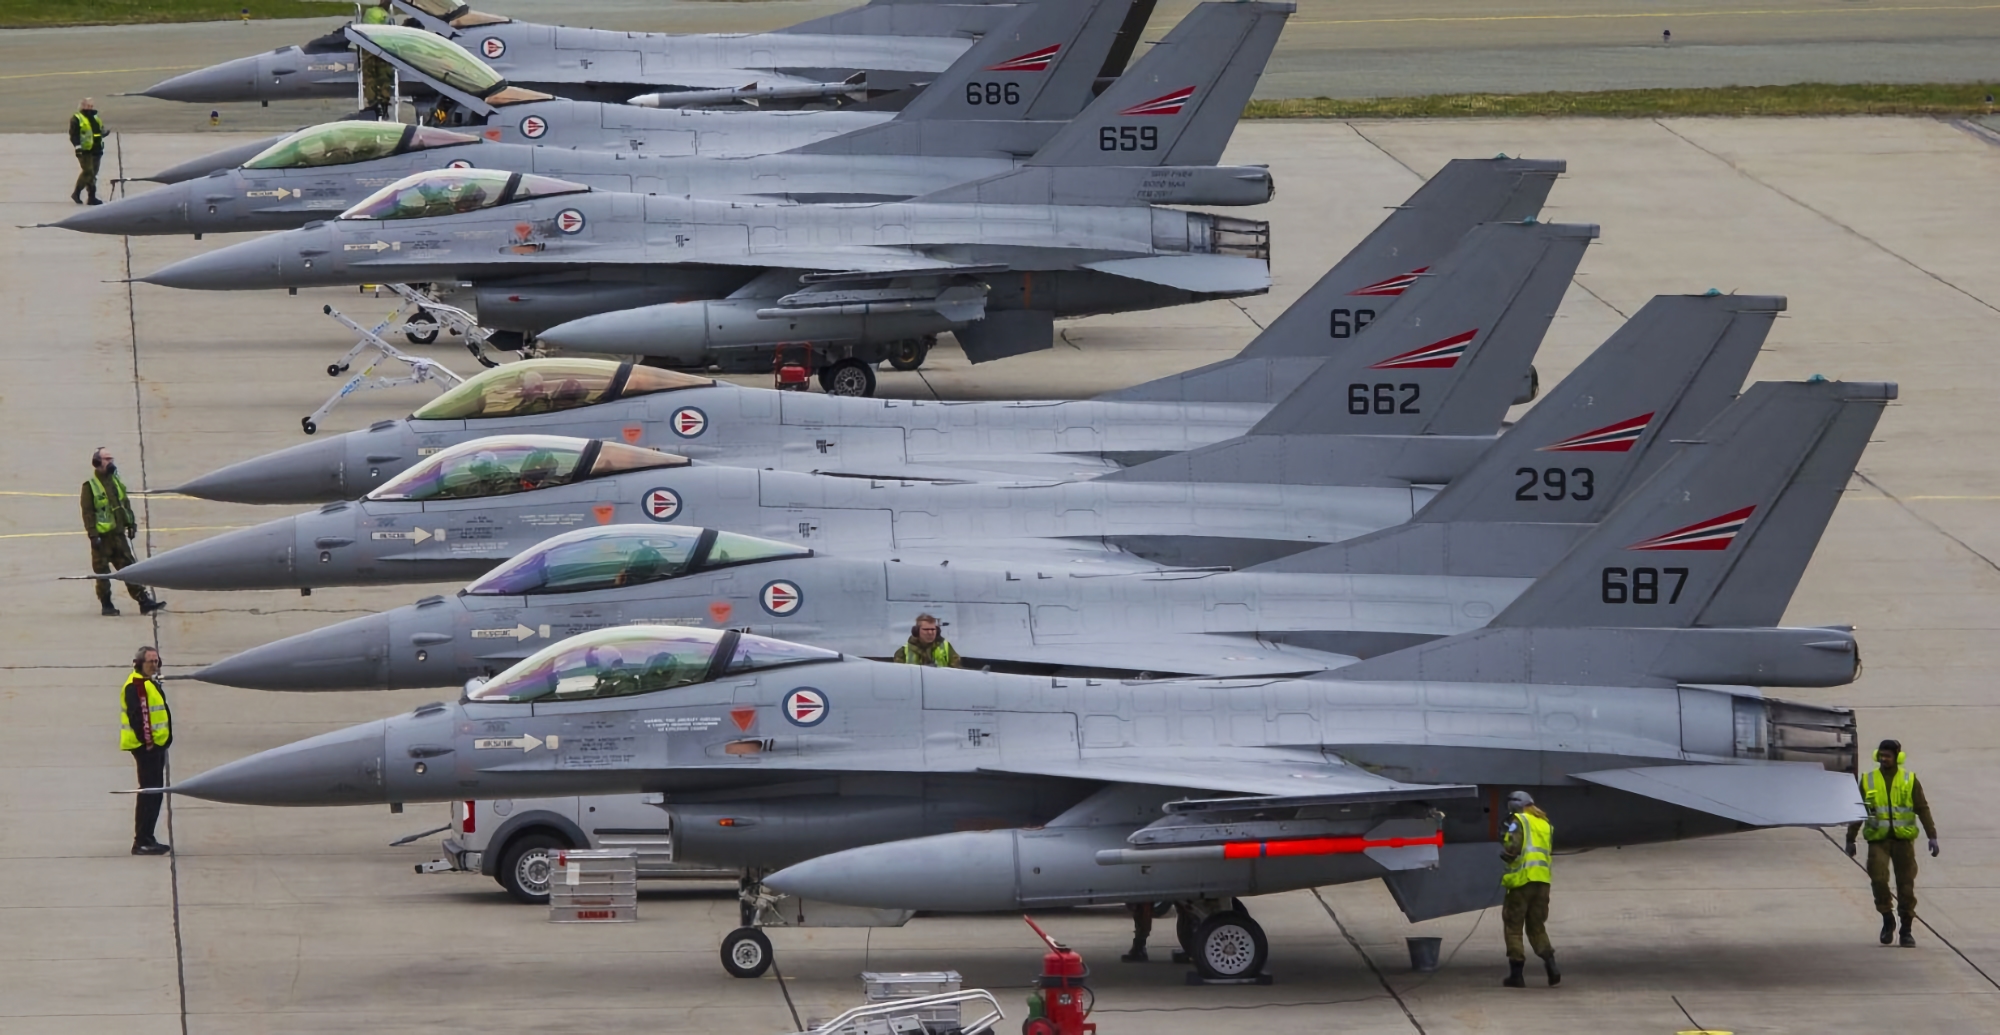 Ukraina kan få nederländska F-16 Fighting Falcon stridsflygplan inom 6 till 8 månader